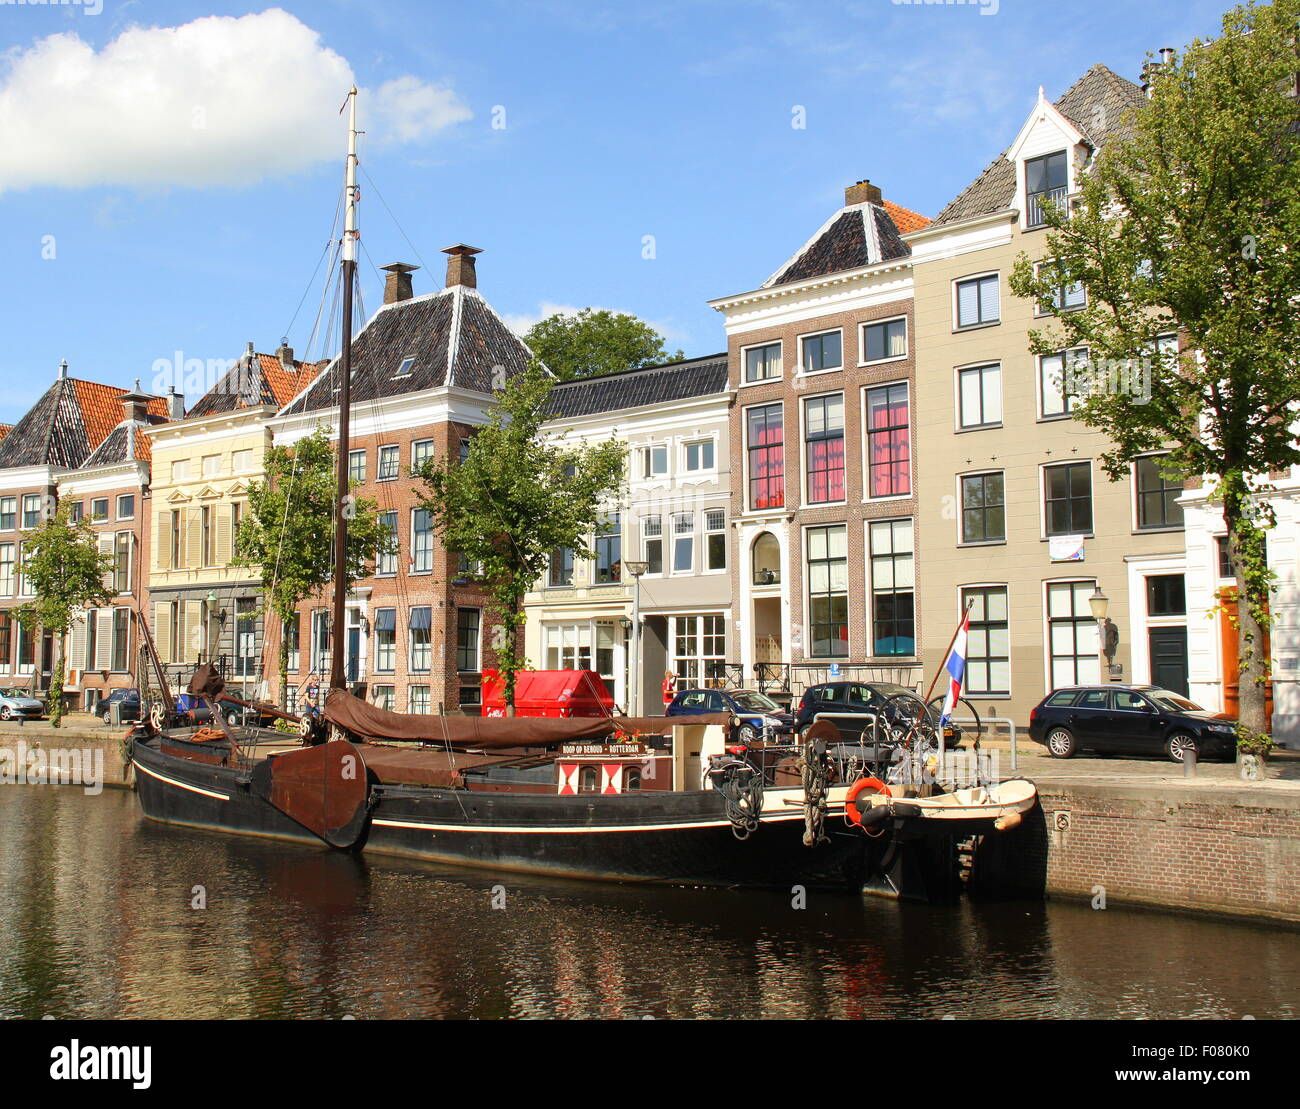 Groningen.August-05-2015. Les maisons historiques et en bateau dans la ville de Groningen Banque D'Images